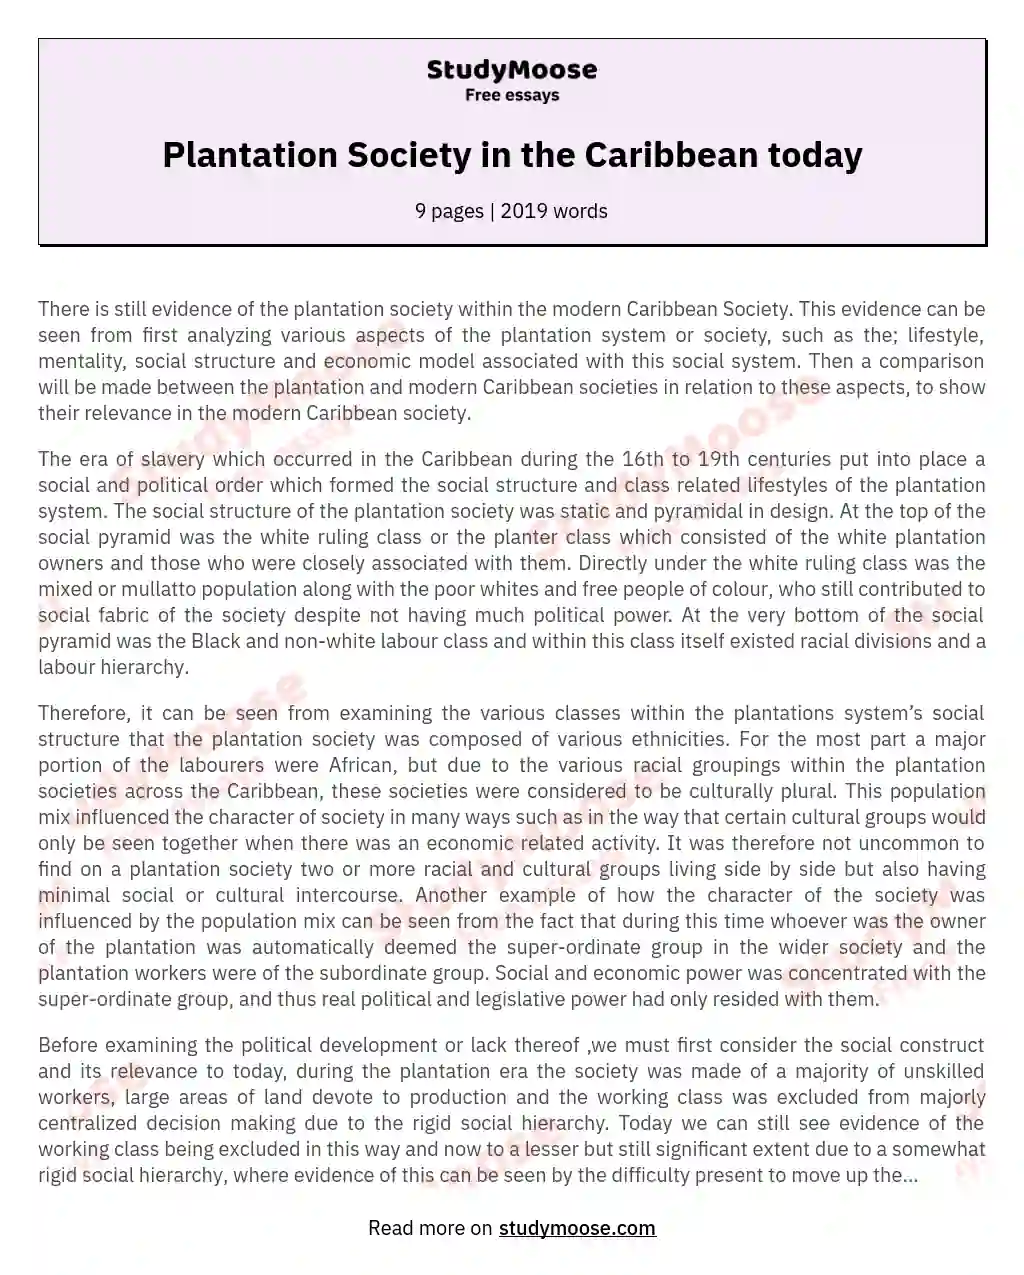 Plantation Society in the Caribbean today essay